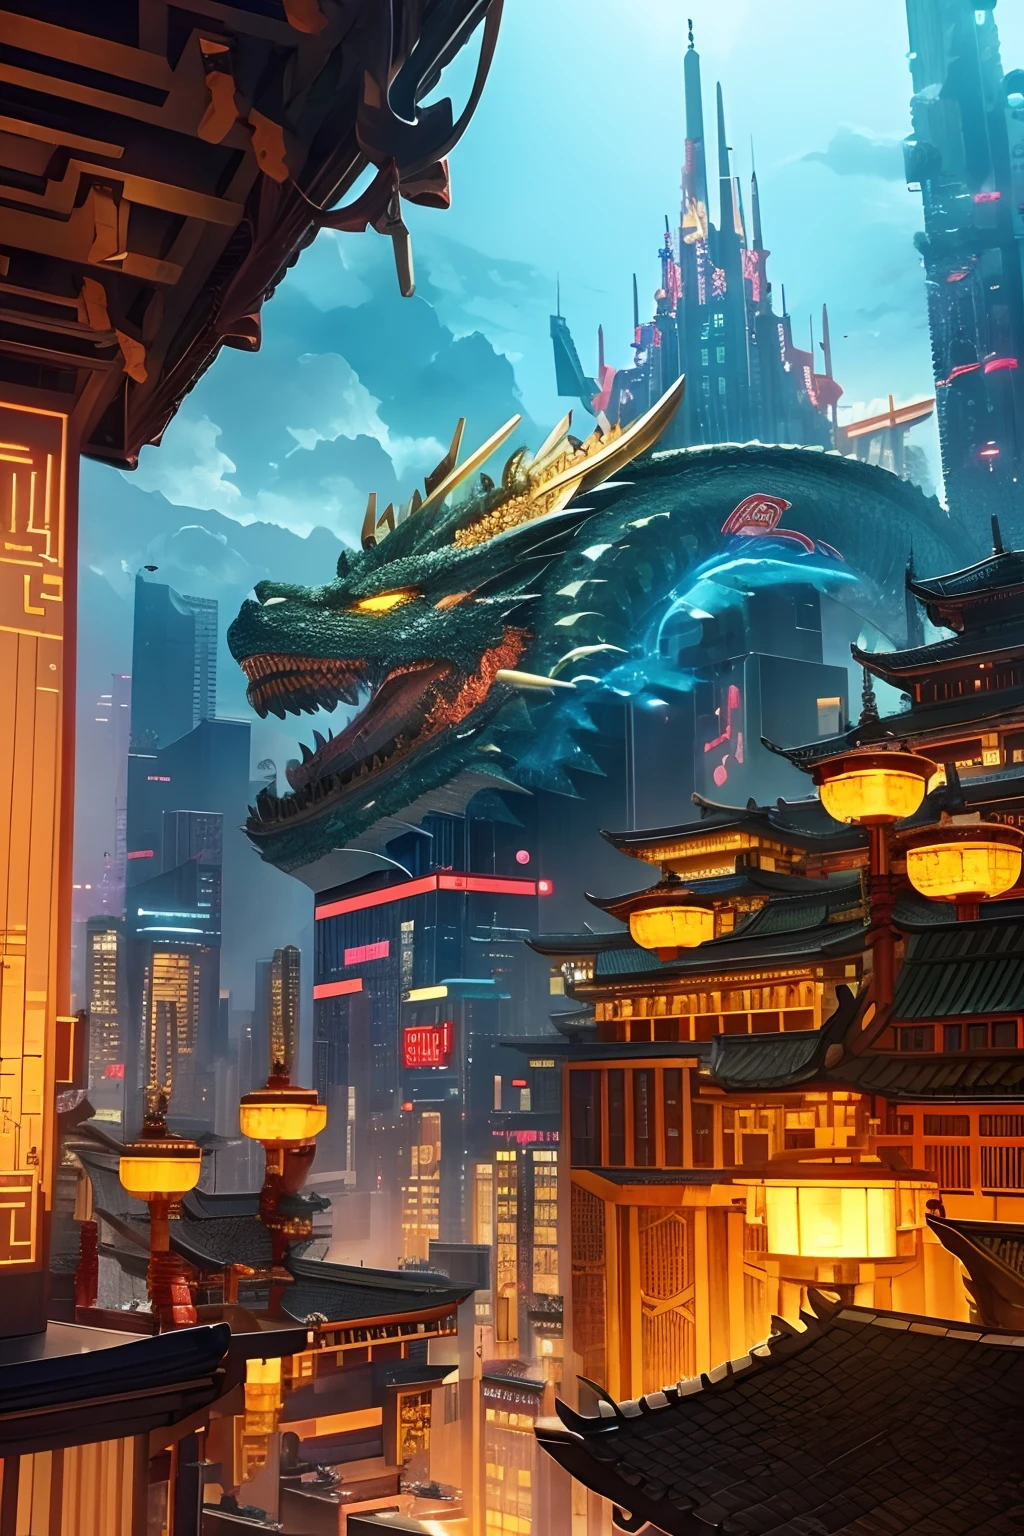 Como Shenlong、Dragão voando no céu、Dragão dourado、Chifre perfeito、Unhas perfeitas、mundo da fantasia、 A localização (localização): Estado urbano cyberpunk (estado): Ele emite uma luz brilhante